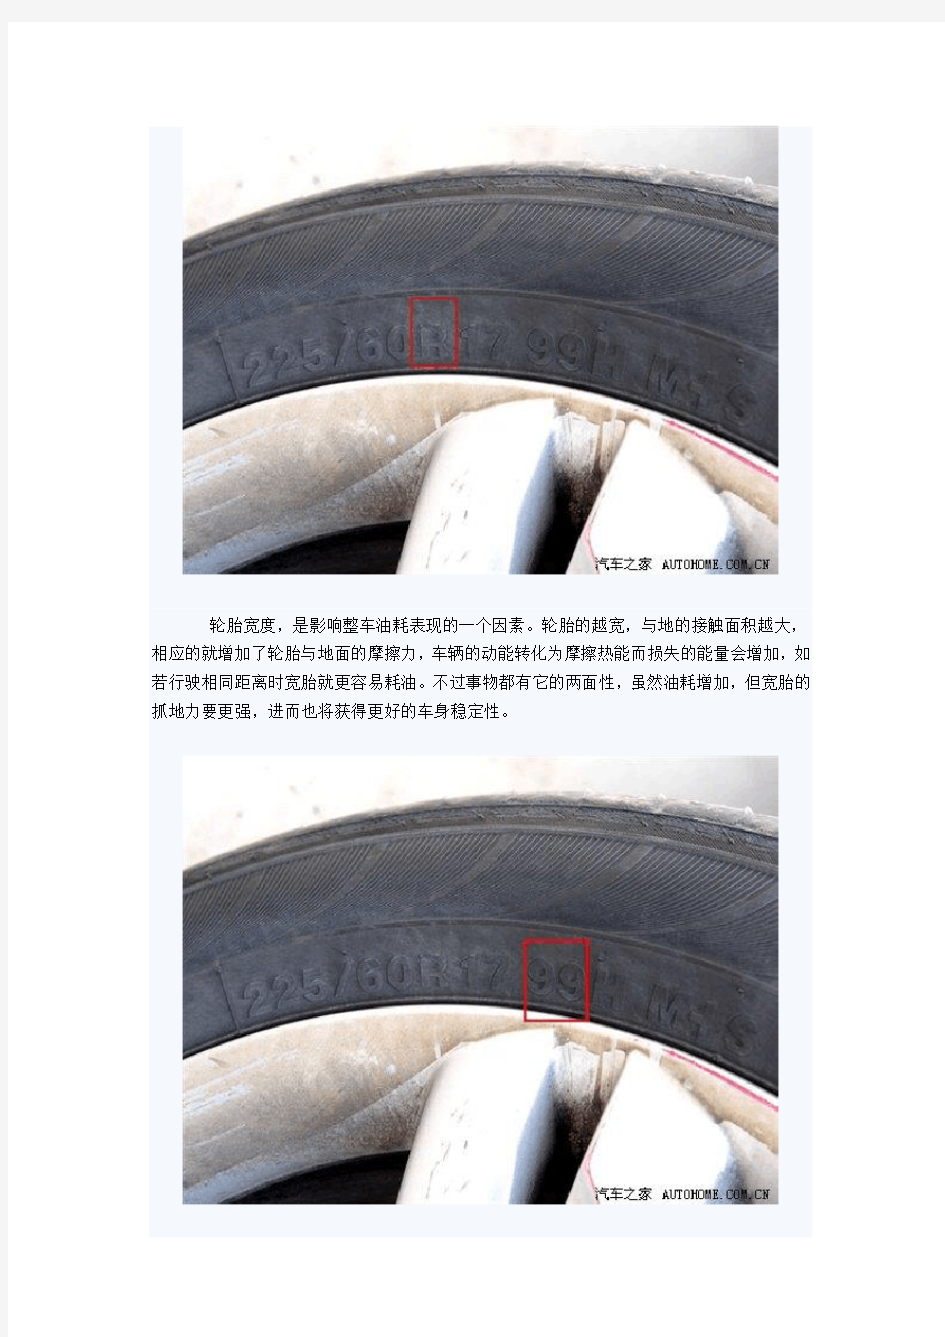 (推荐)轮胎规格参数解释